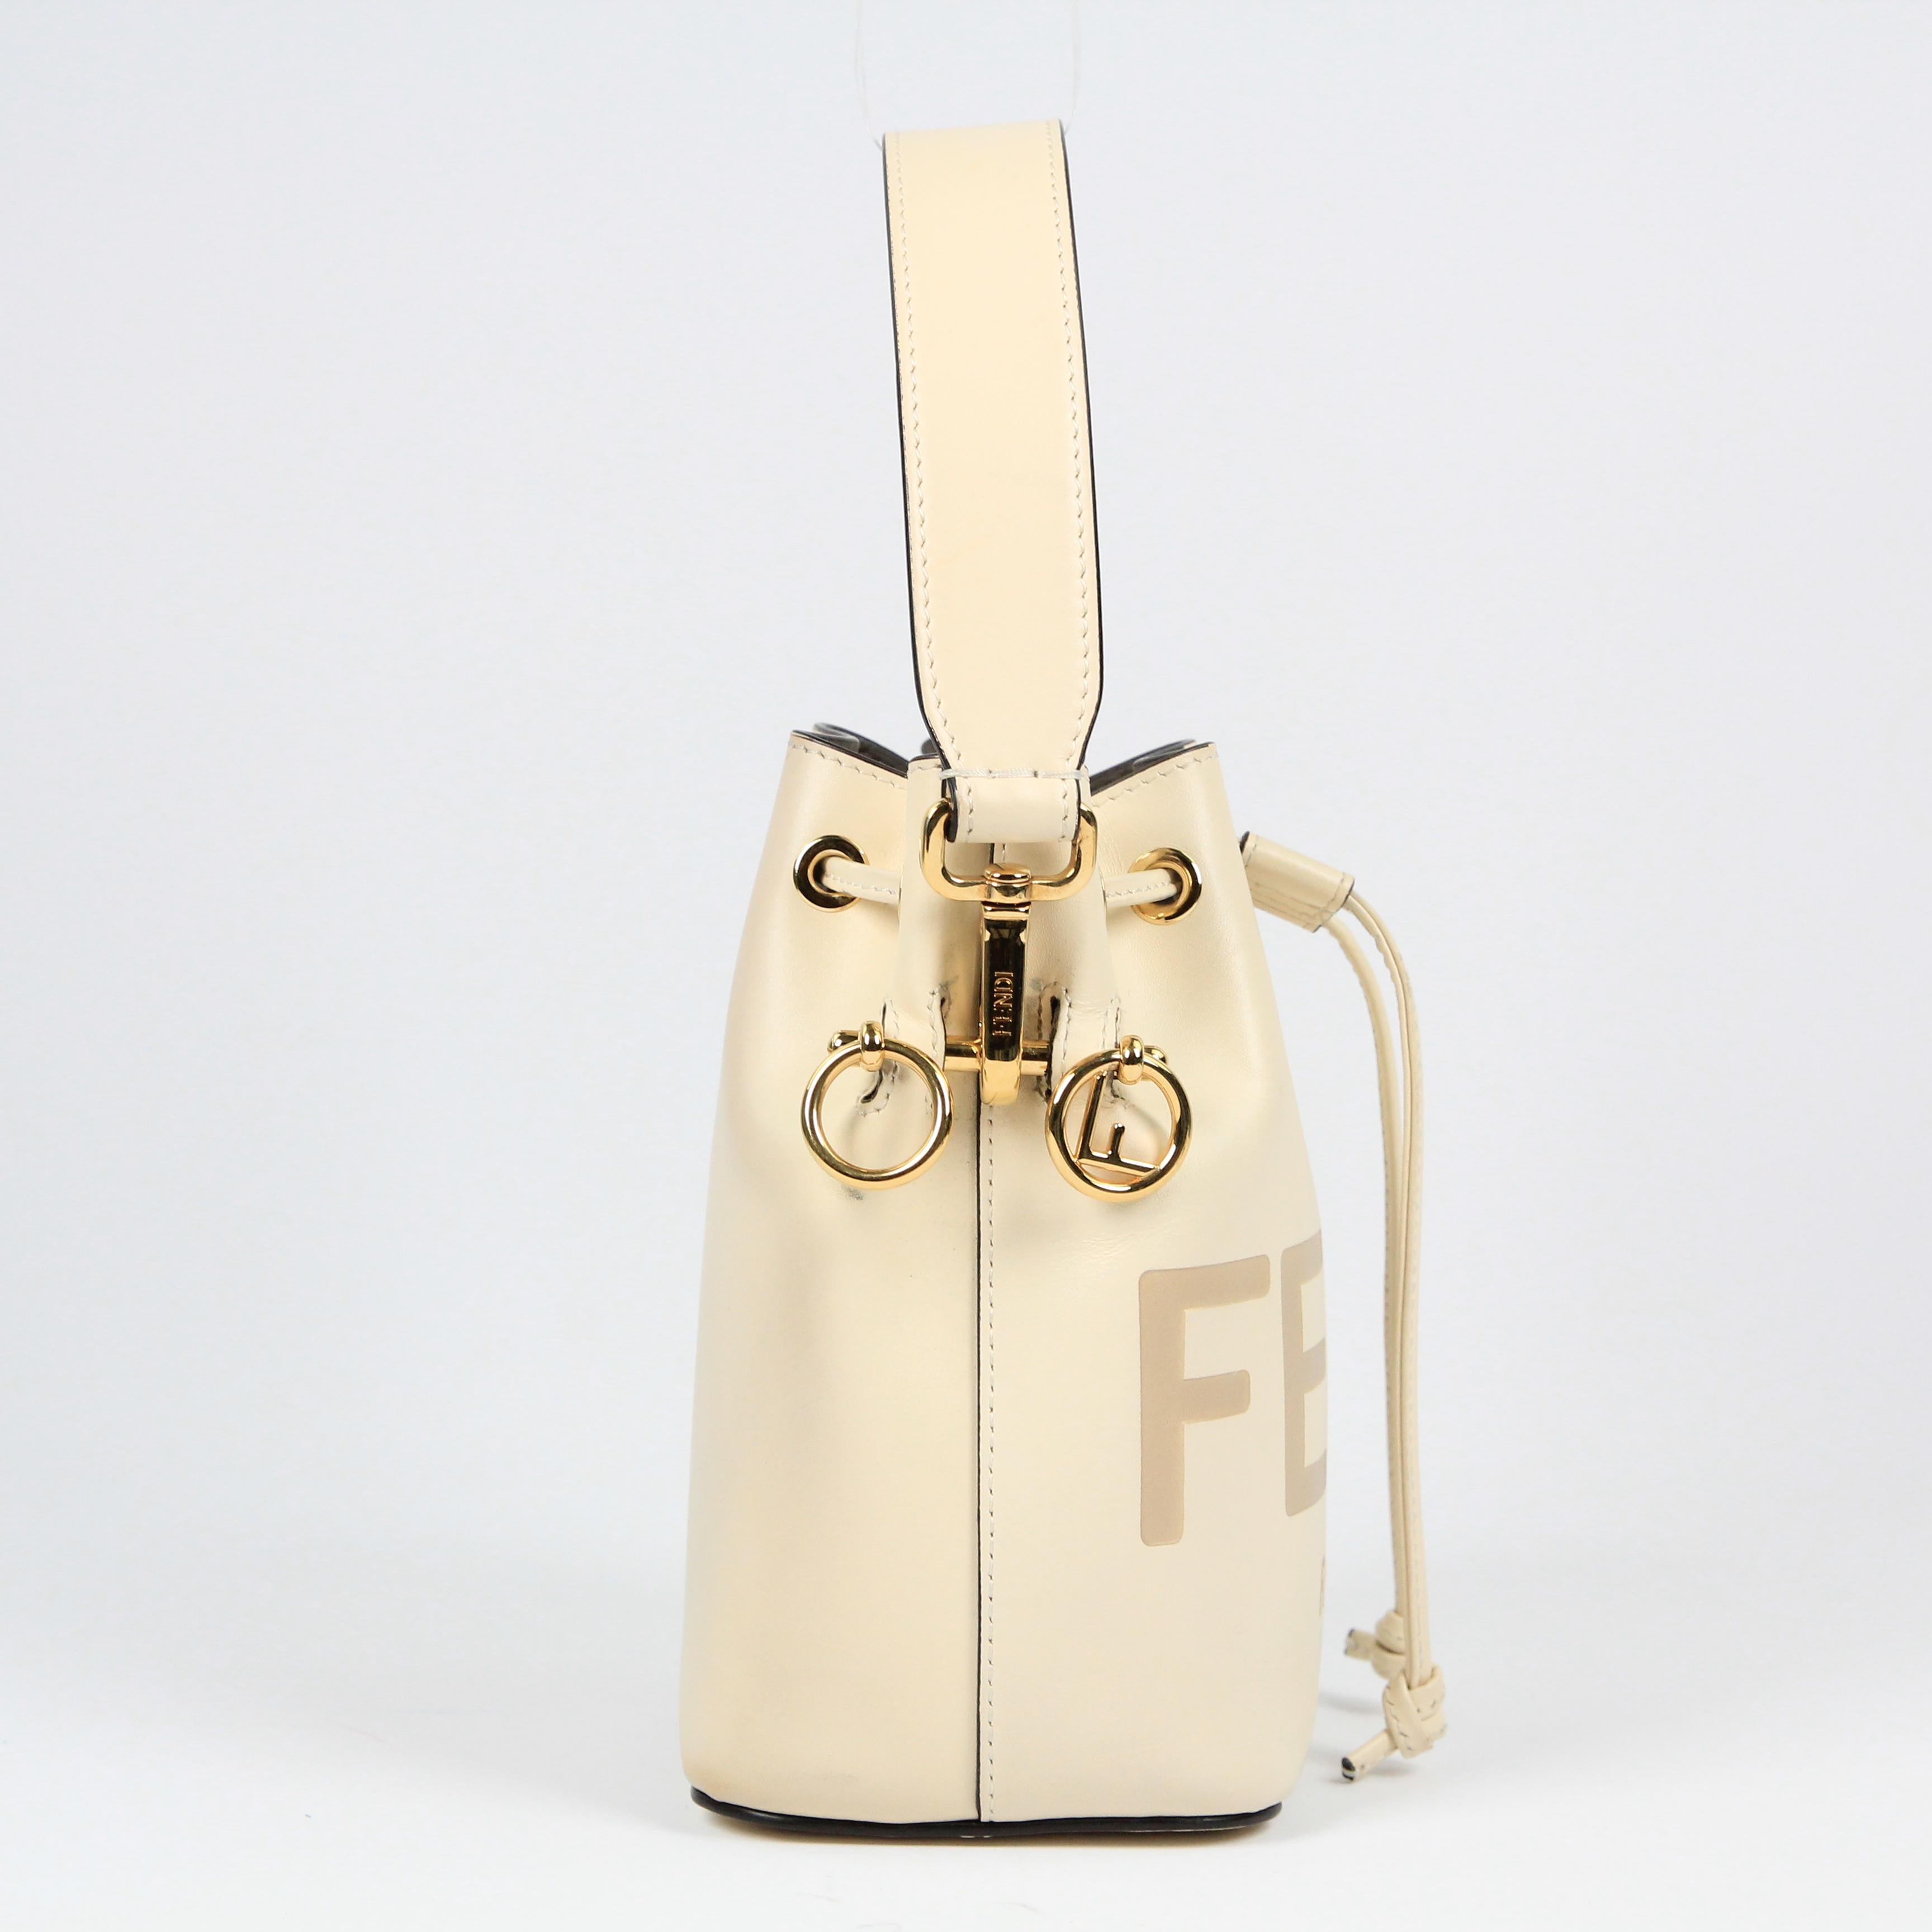 Fendi Mon Trésor leather handbag For Sale 4